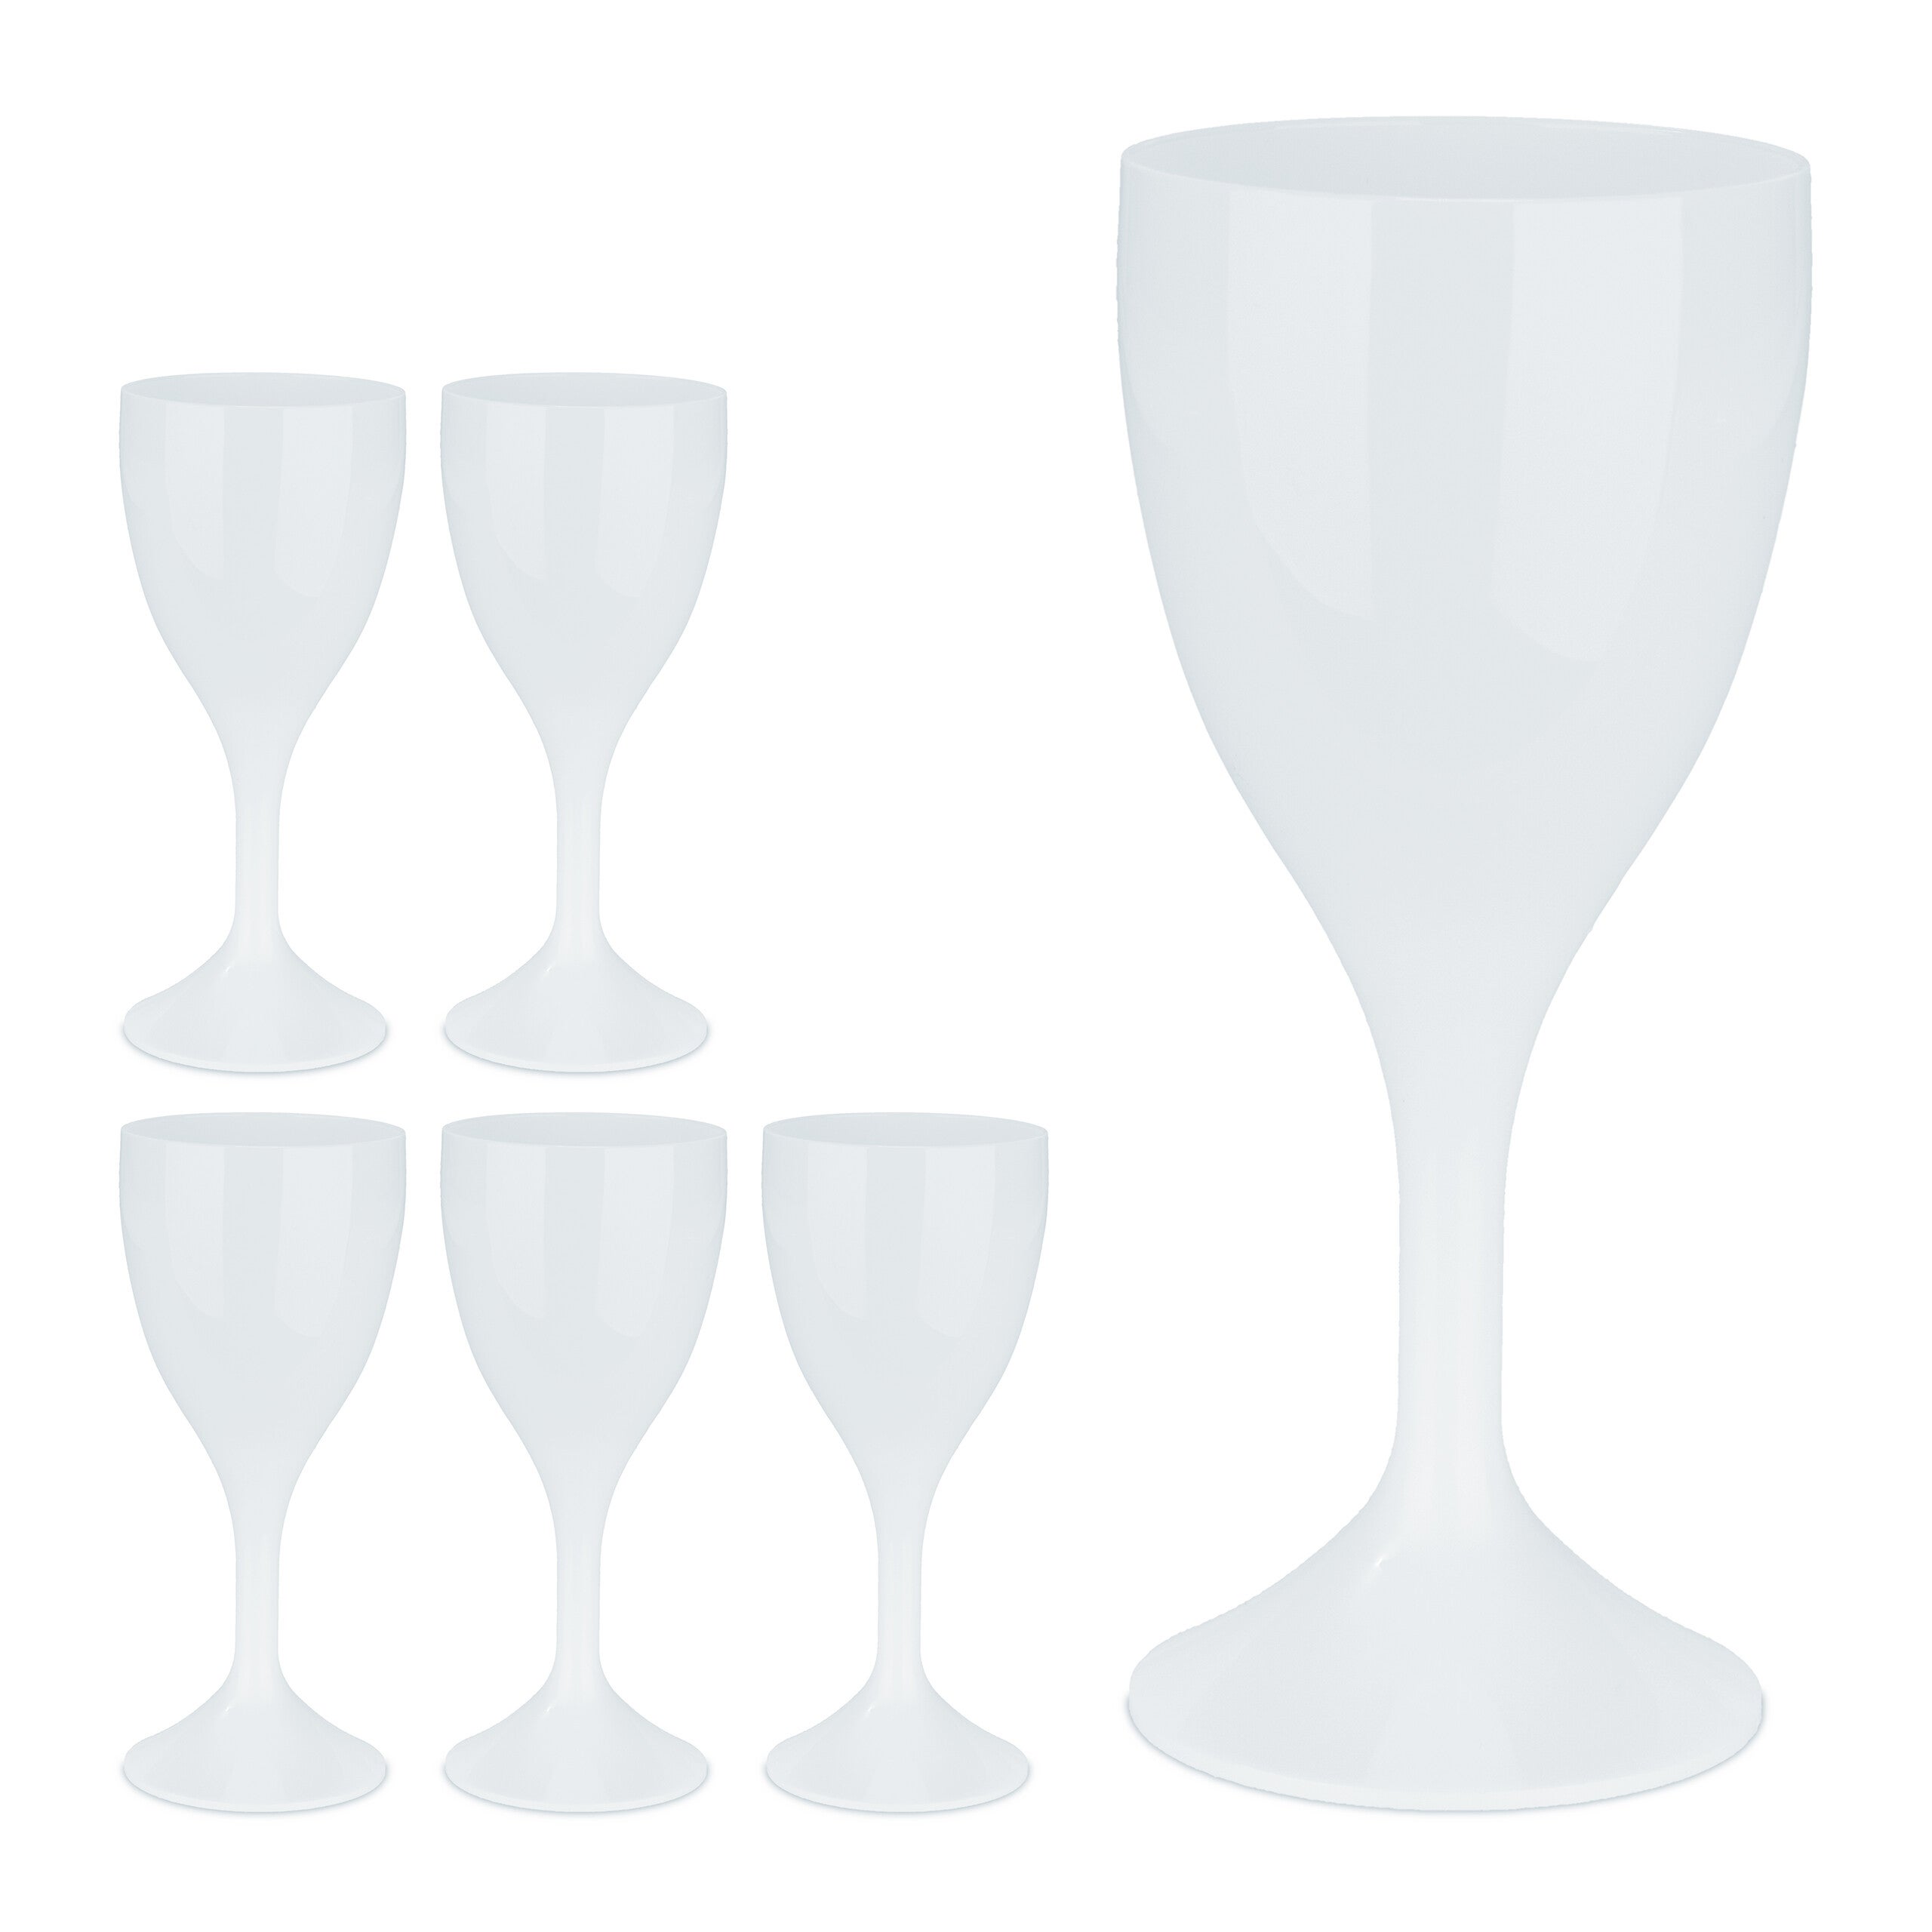 Verre à vin Blanc: le lot de 6 verres en polycarbonate